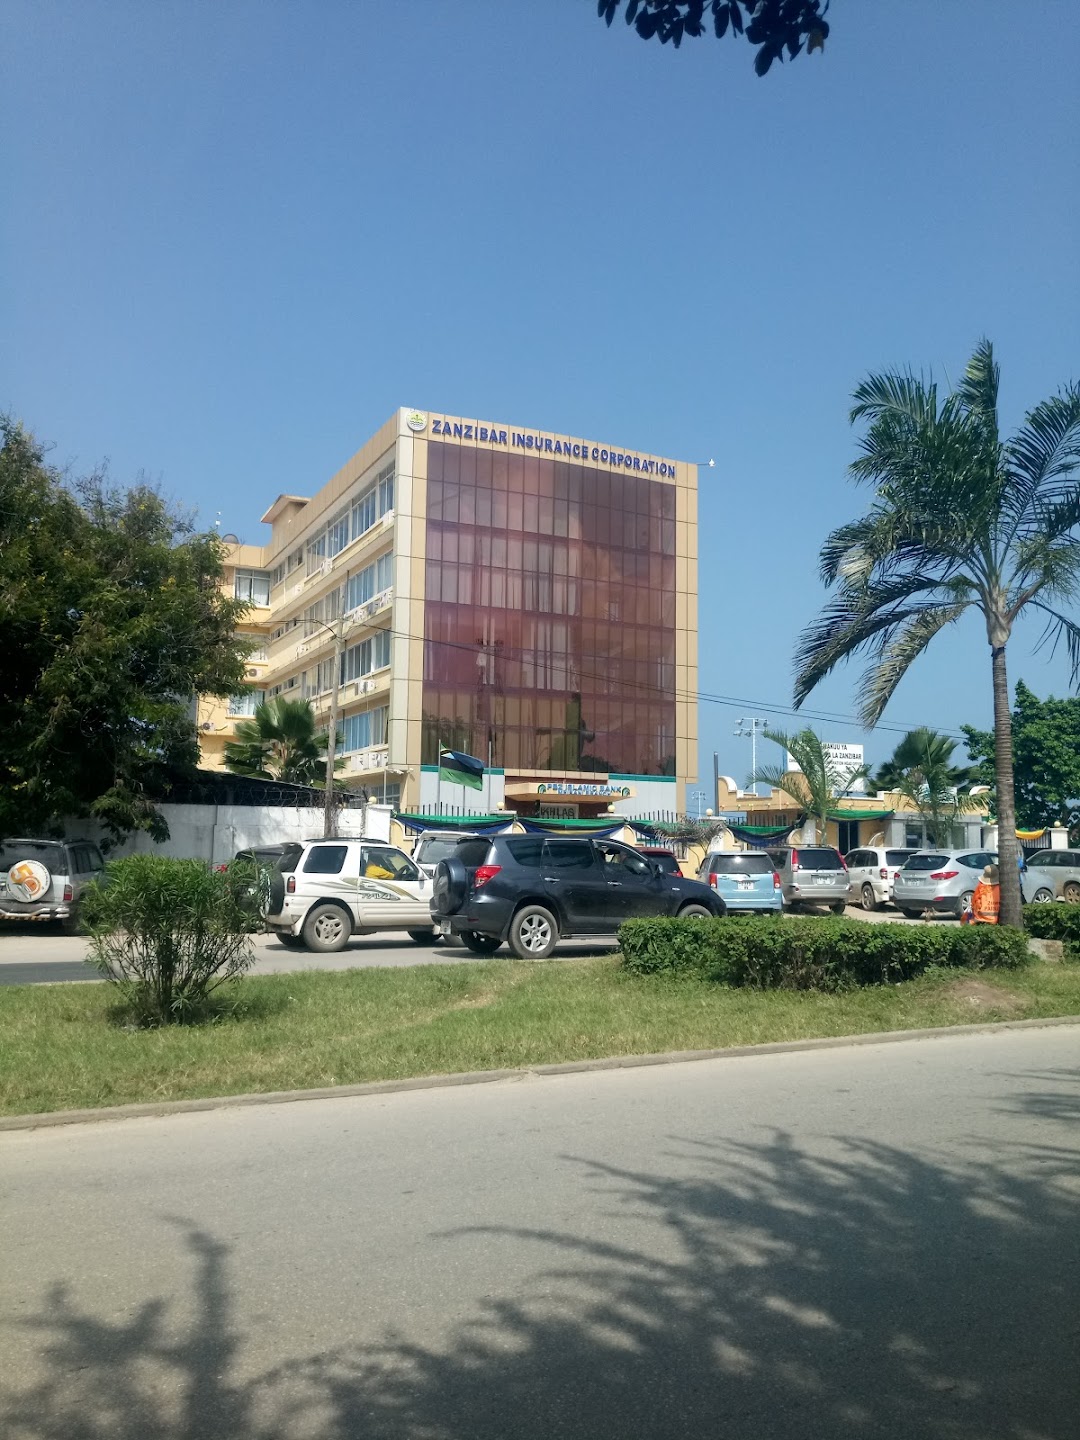 Zanzibar Insurance Corporation (Maisara)Mpirani